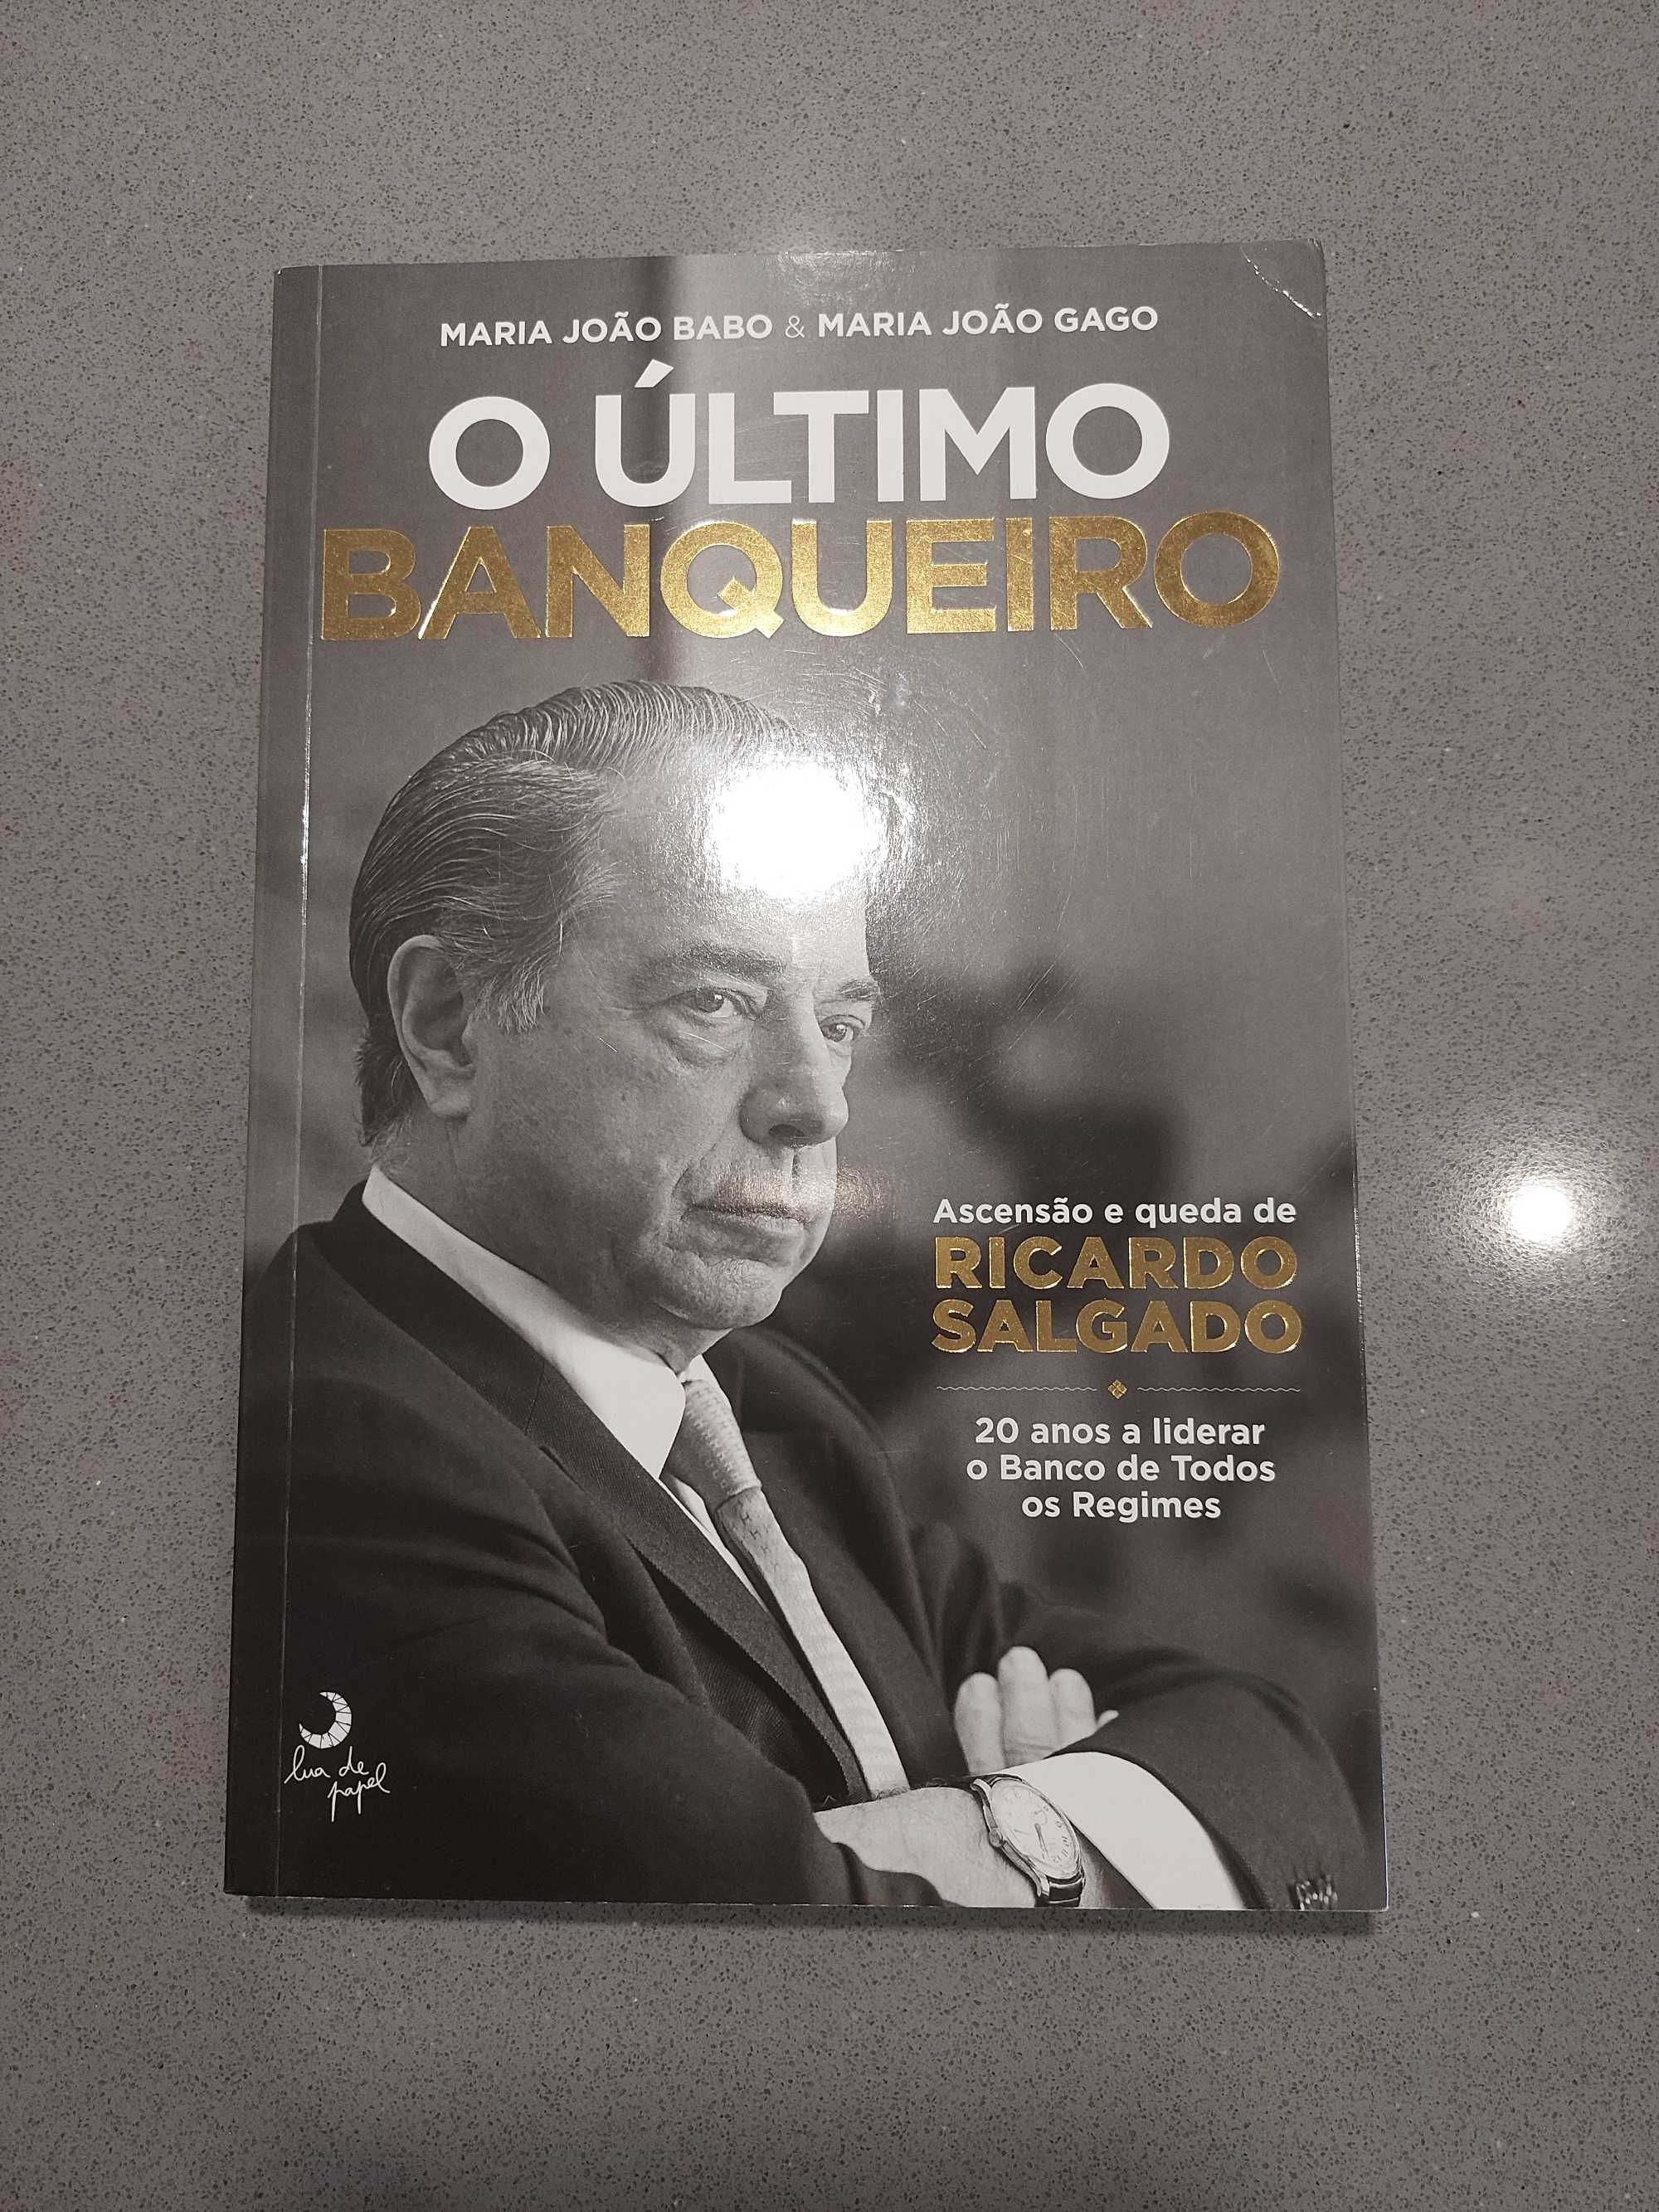 O Último Banqueiro - Ascensão e queda de Ricardo Salgado (PORTES G)